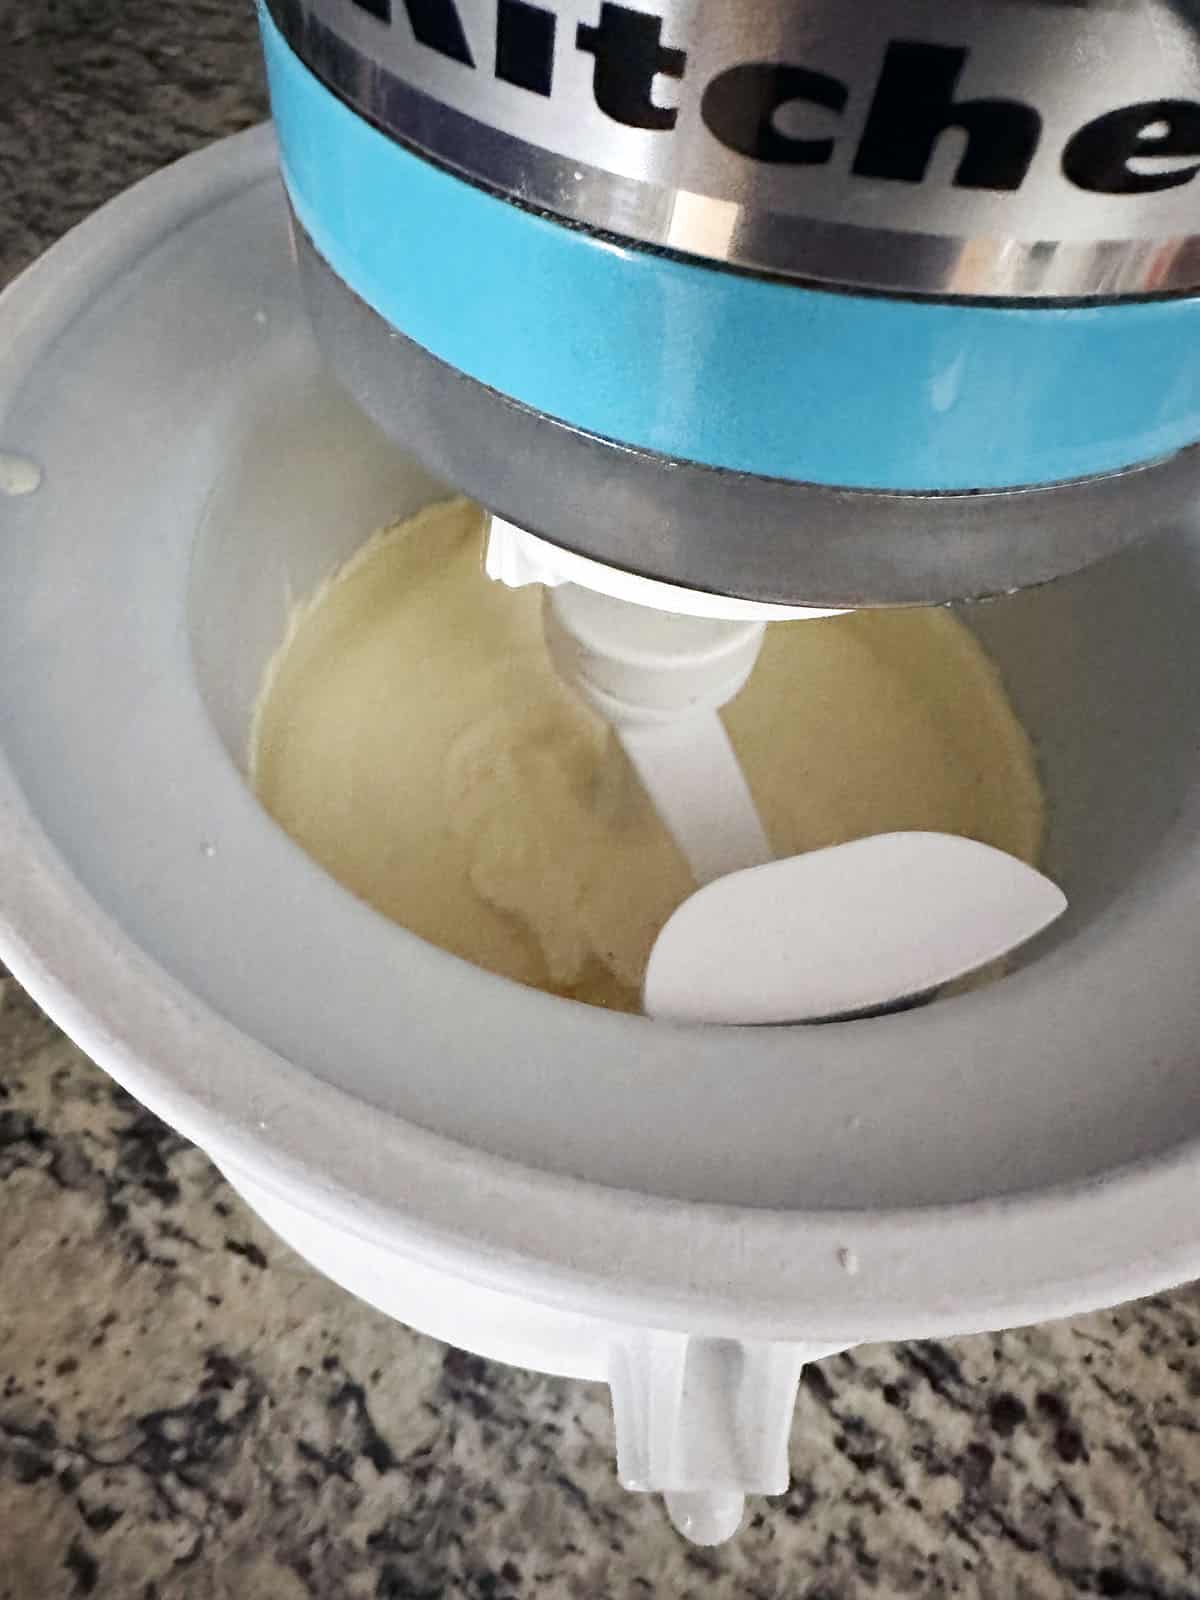 Ice cream processing in KitchenAid ice cream attachment.